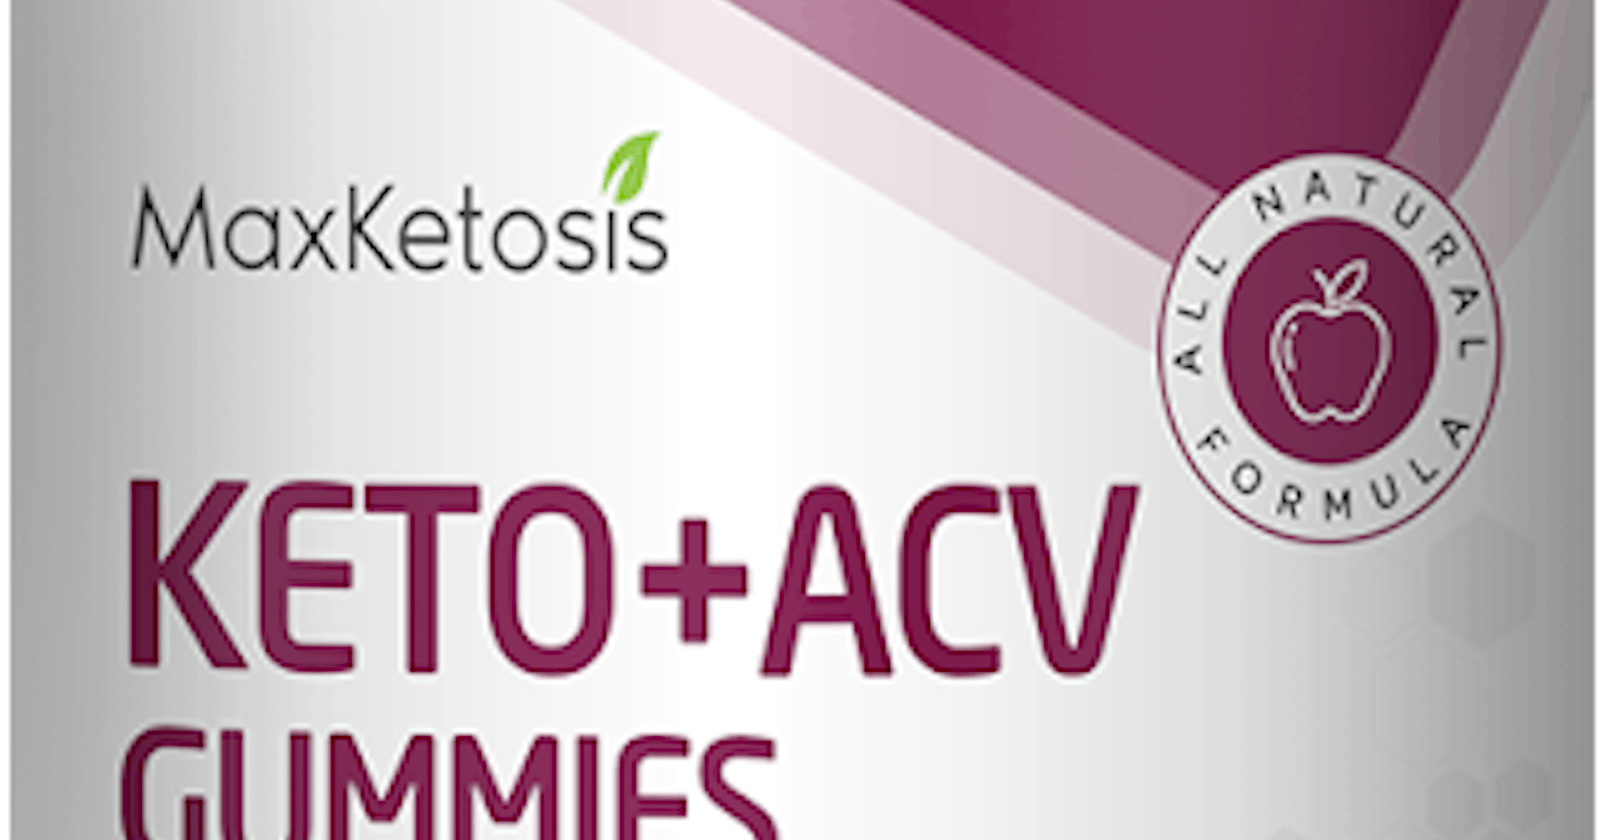 Max Ketosis Keto ACV Gummies Weight Loss Review